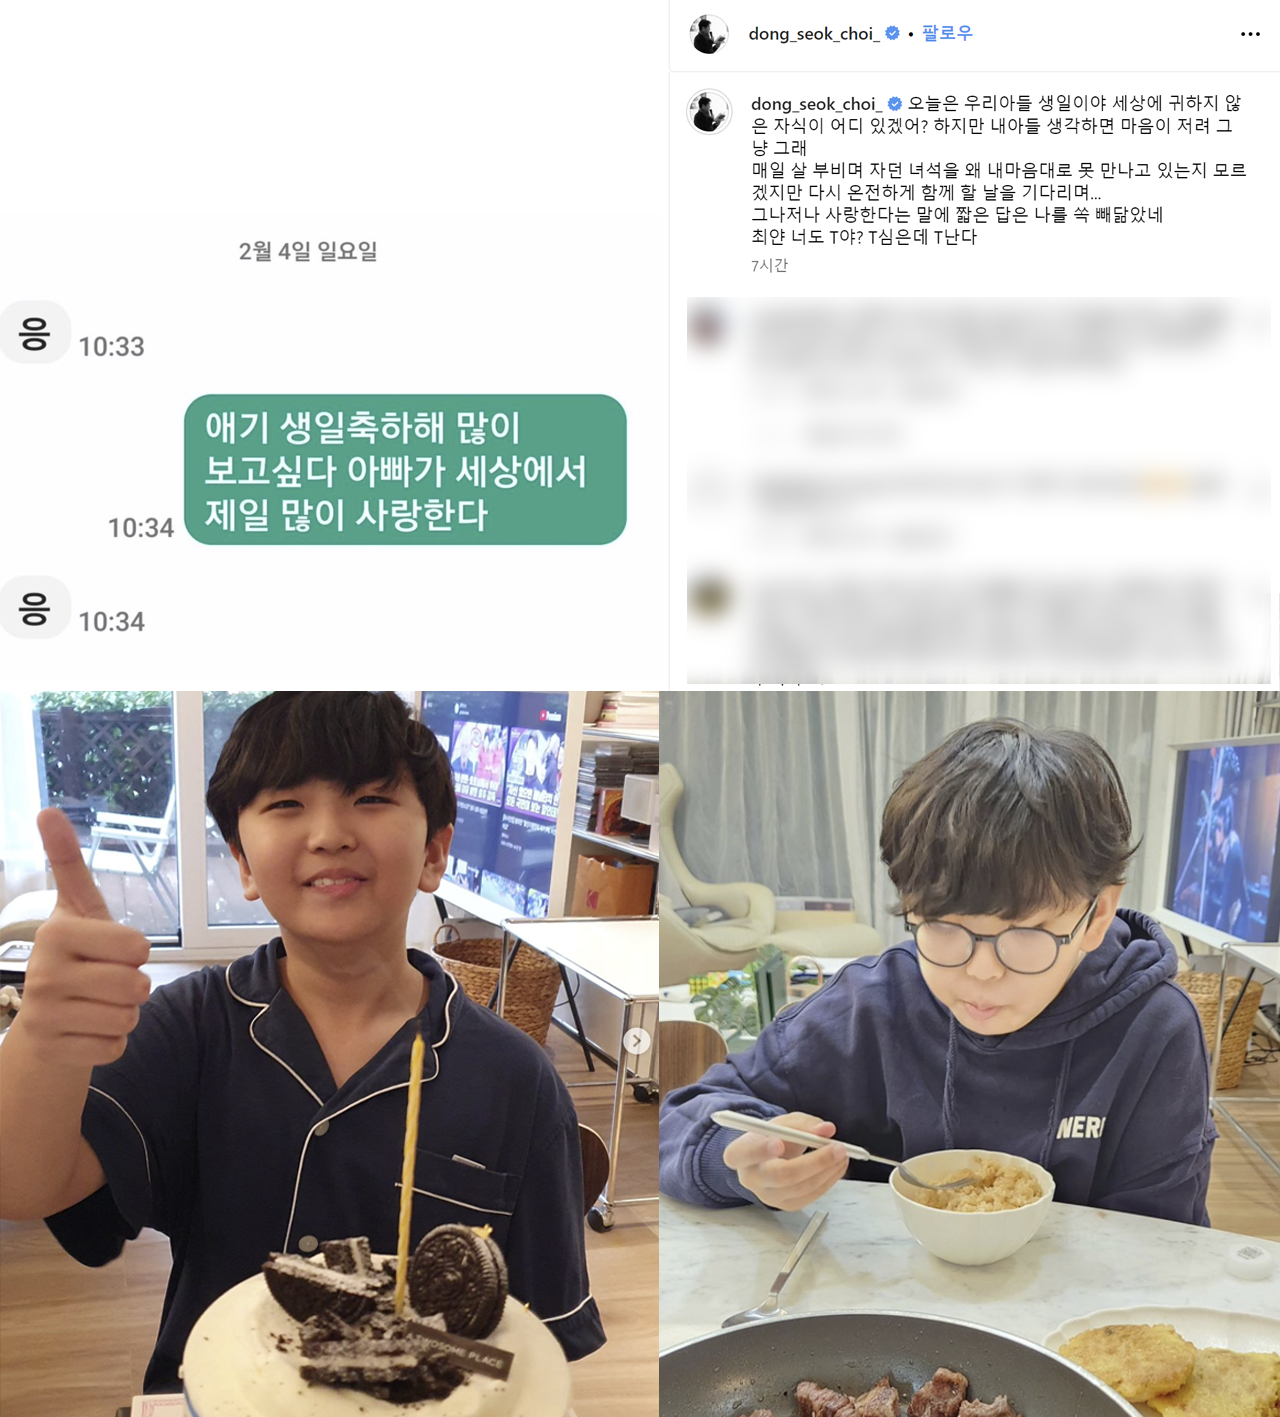 ▲ Sessão de fotos de mídia social de Choi Dong-seok, filho de Choi Dong-seok (Foto = foto de mídia social de Choi Dong-seok)